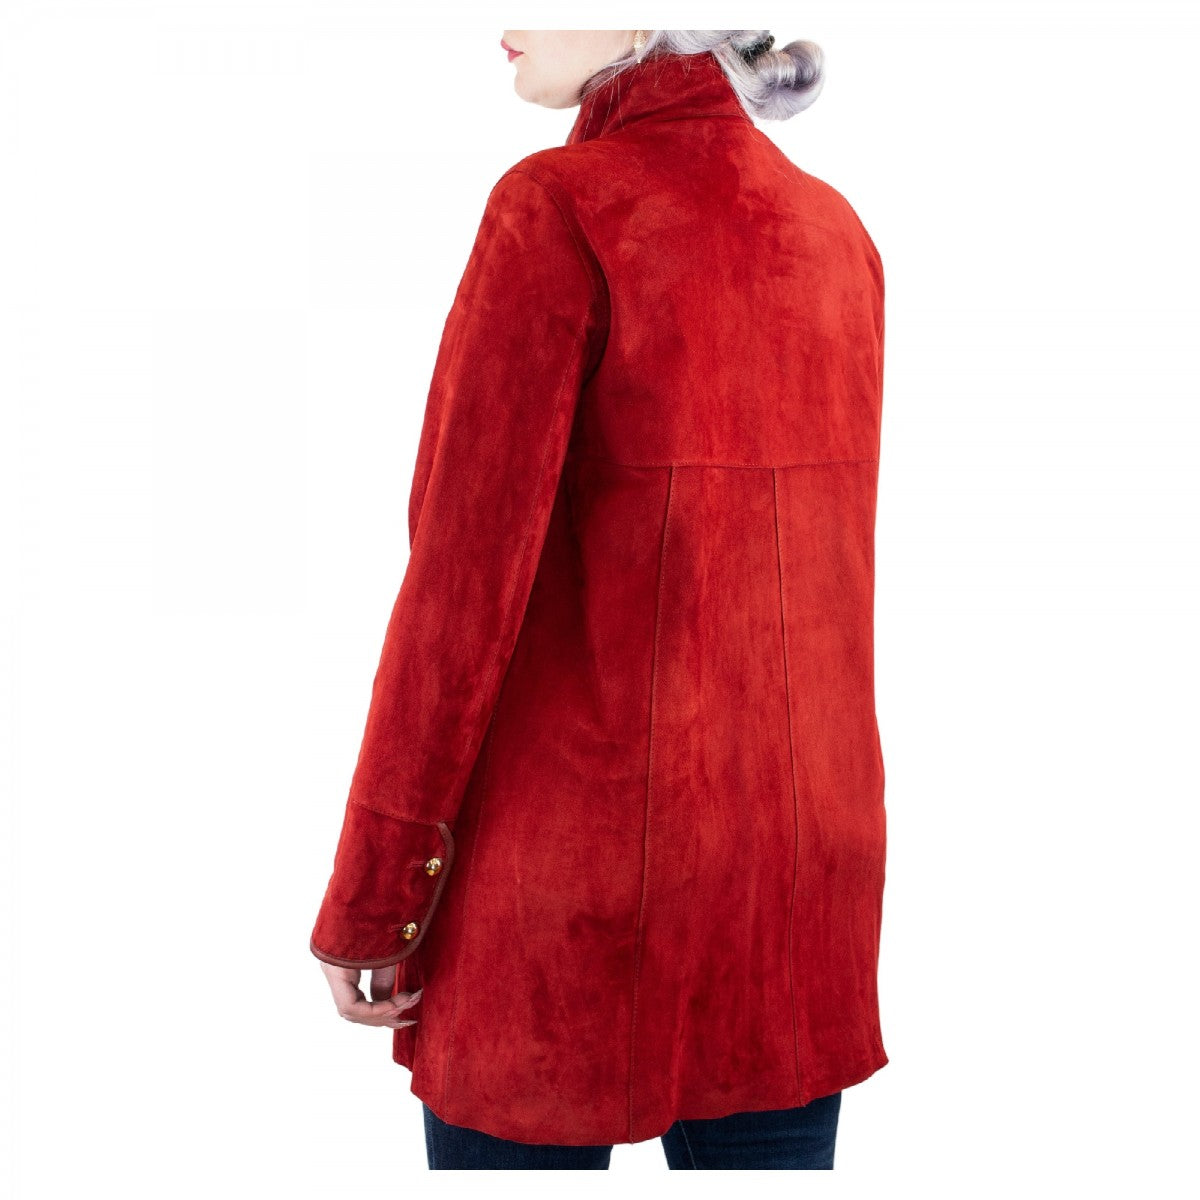 Giacca elegante reversibile Abois da donna fatta a mano in pelle di renna rossa con bottoni